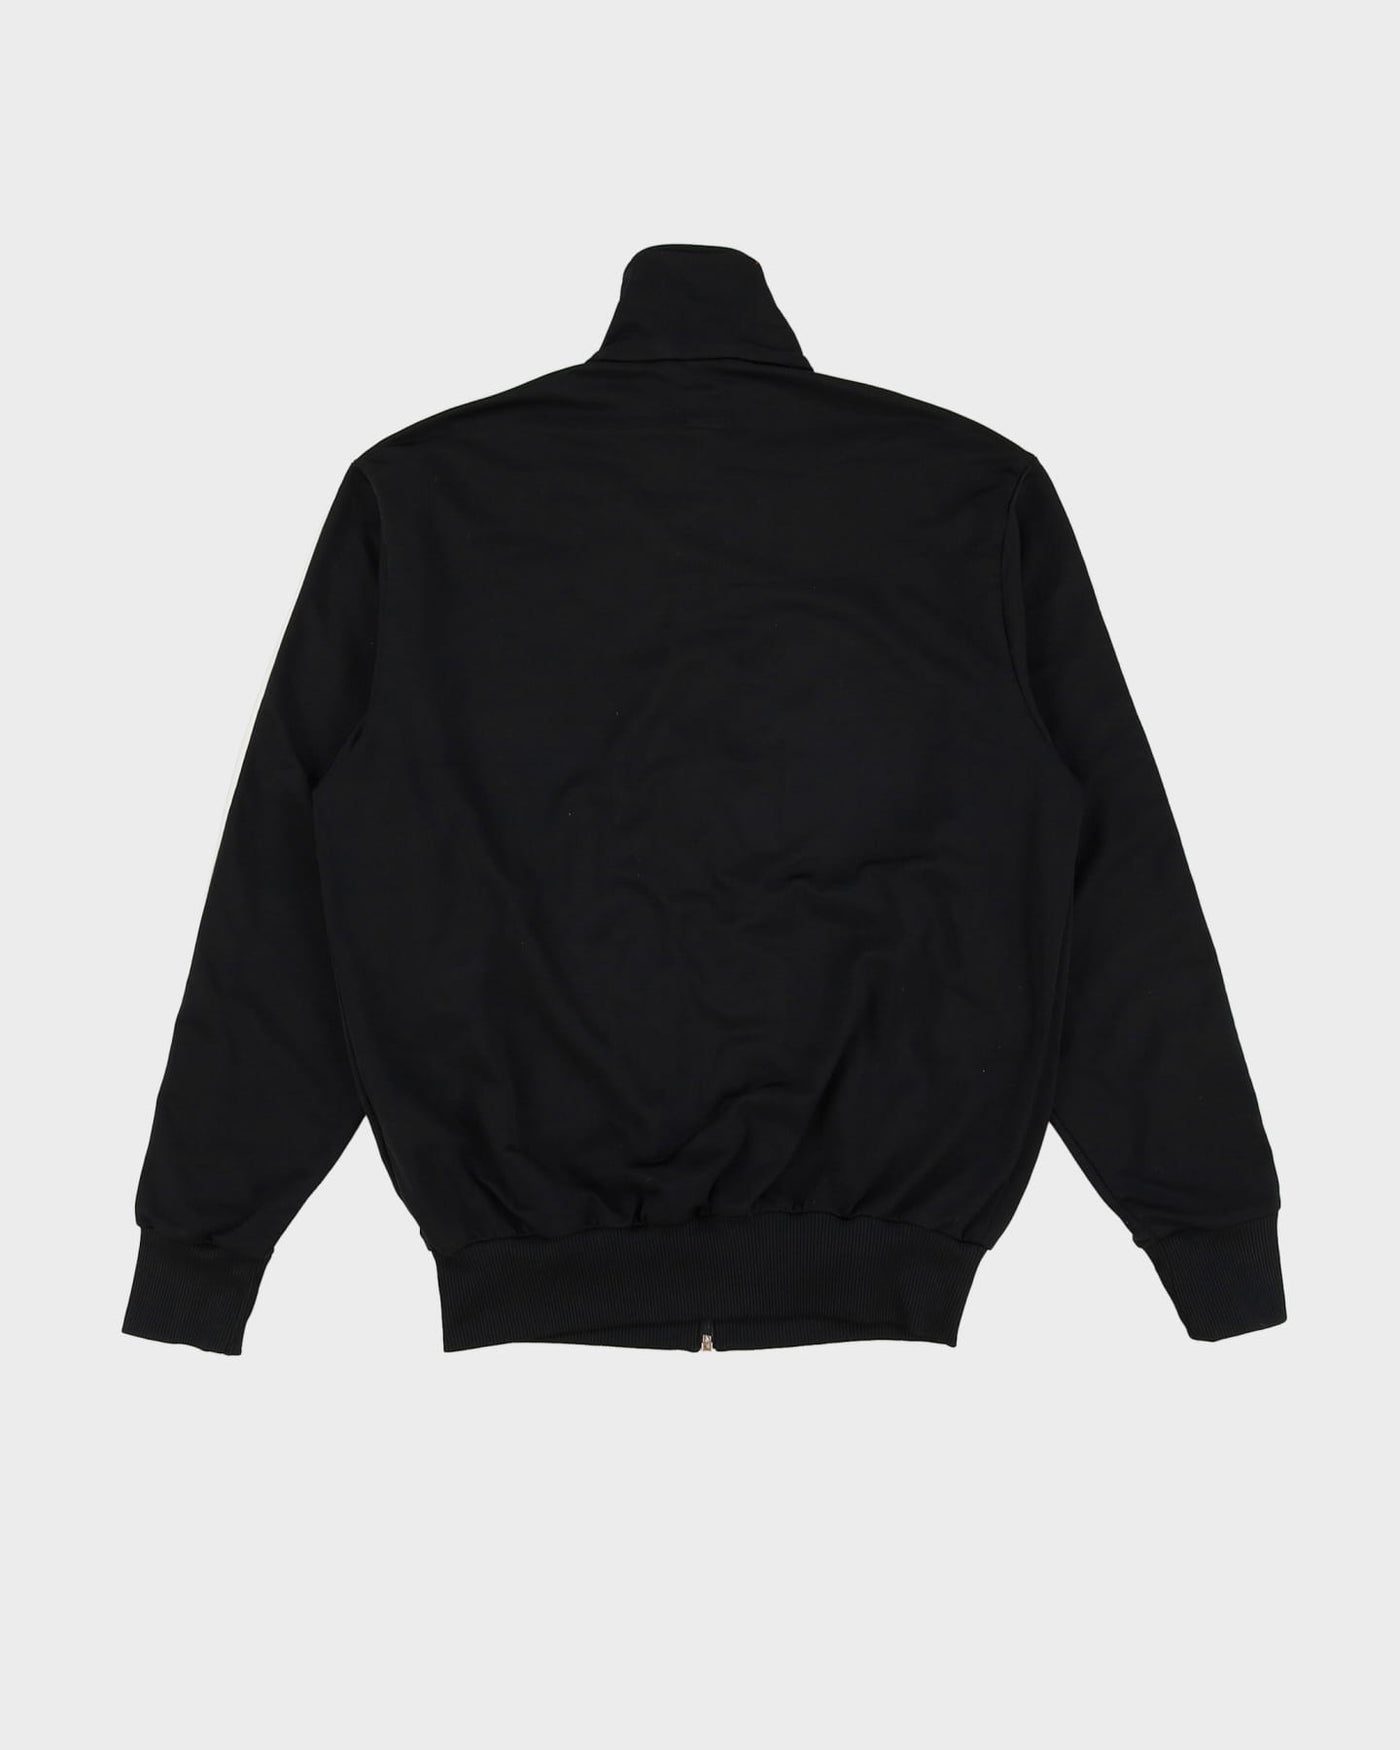 00s Adidas Black / White Detailed Track Jacket - S